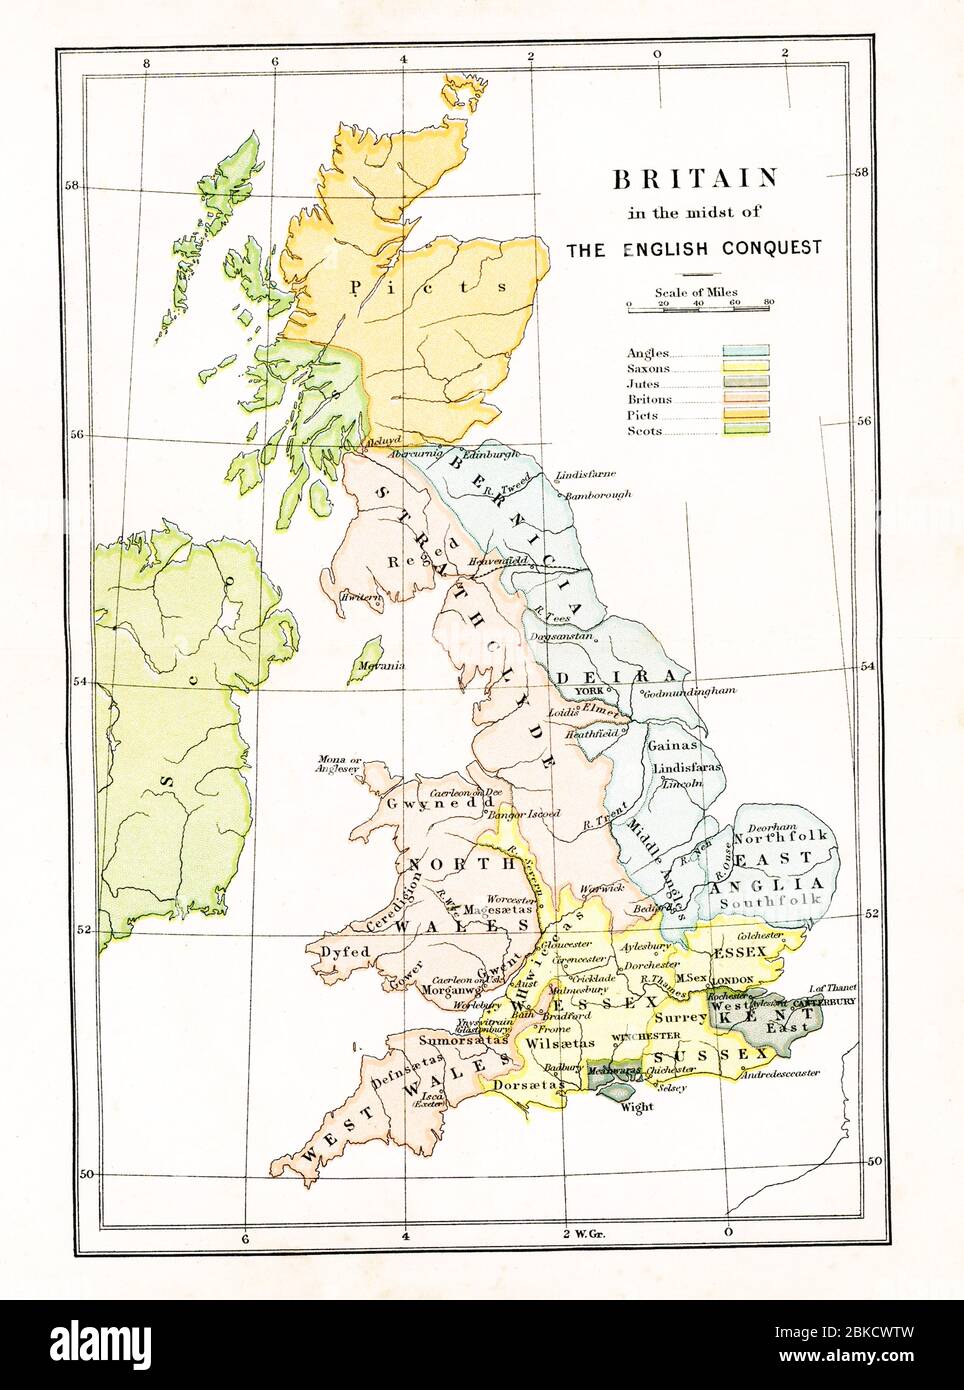 Cette carte montre la Grande-Bretagne au moment où elle était au milieu de la conquête anglaise, du cinquième siècle avant Jésus-Christ au XIe siècle après Jésus-Christ, le bleu représente les angles; le jaune, les Saxons; le gris, les Jutes; le rose, les Britanniques; l'orange, les Pictes; Et le vert, les Écossais. Banque D'Images